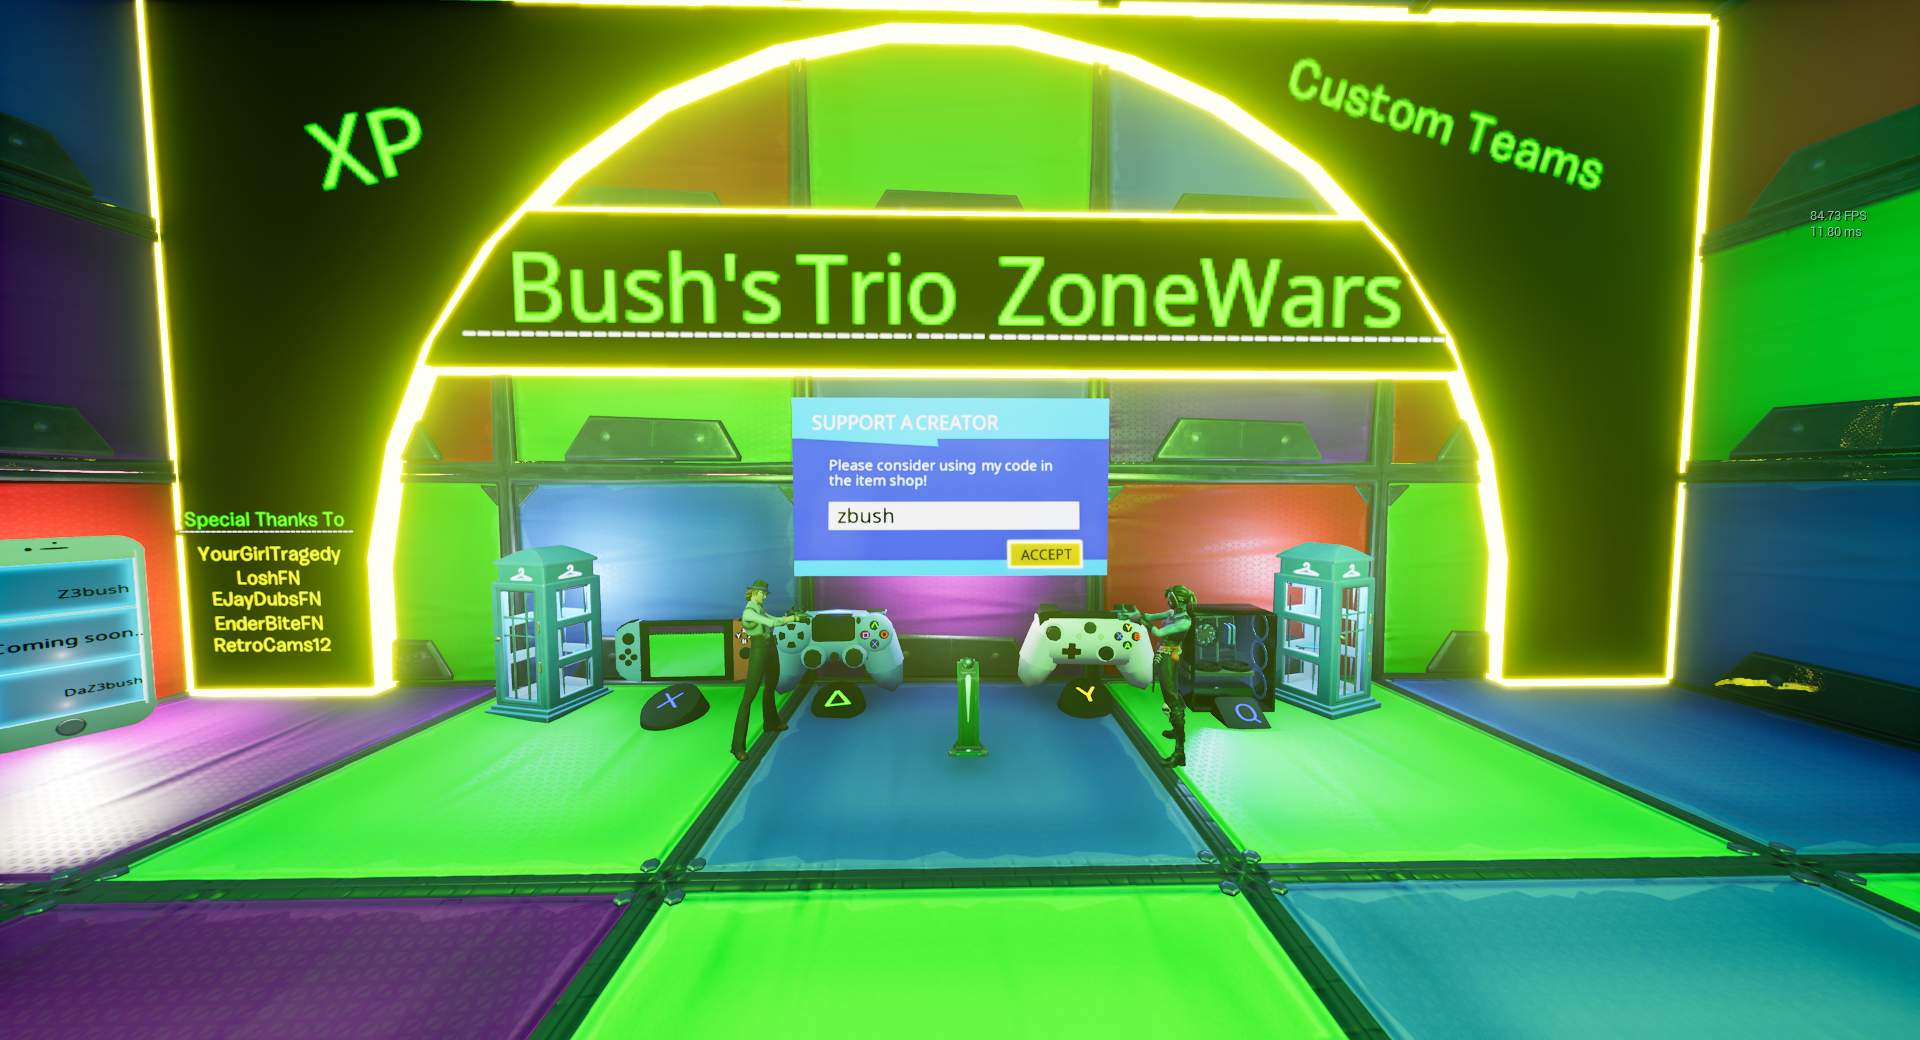 BUSH'S TRIO ZONE WARS (CUSTOM TEAMS) XP